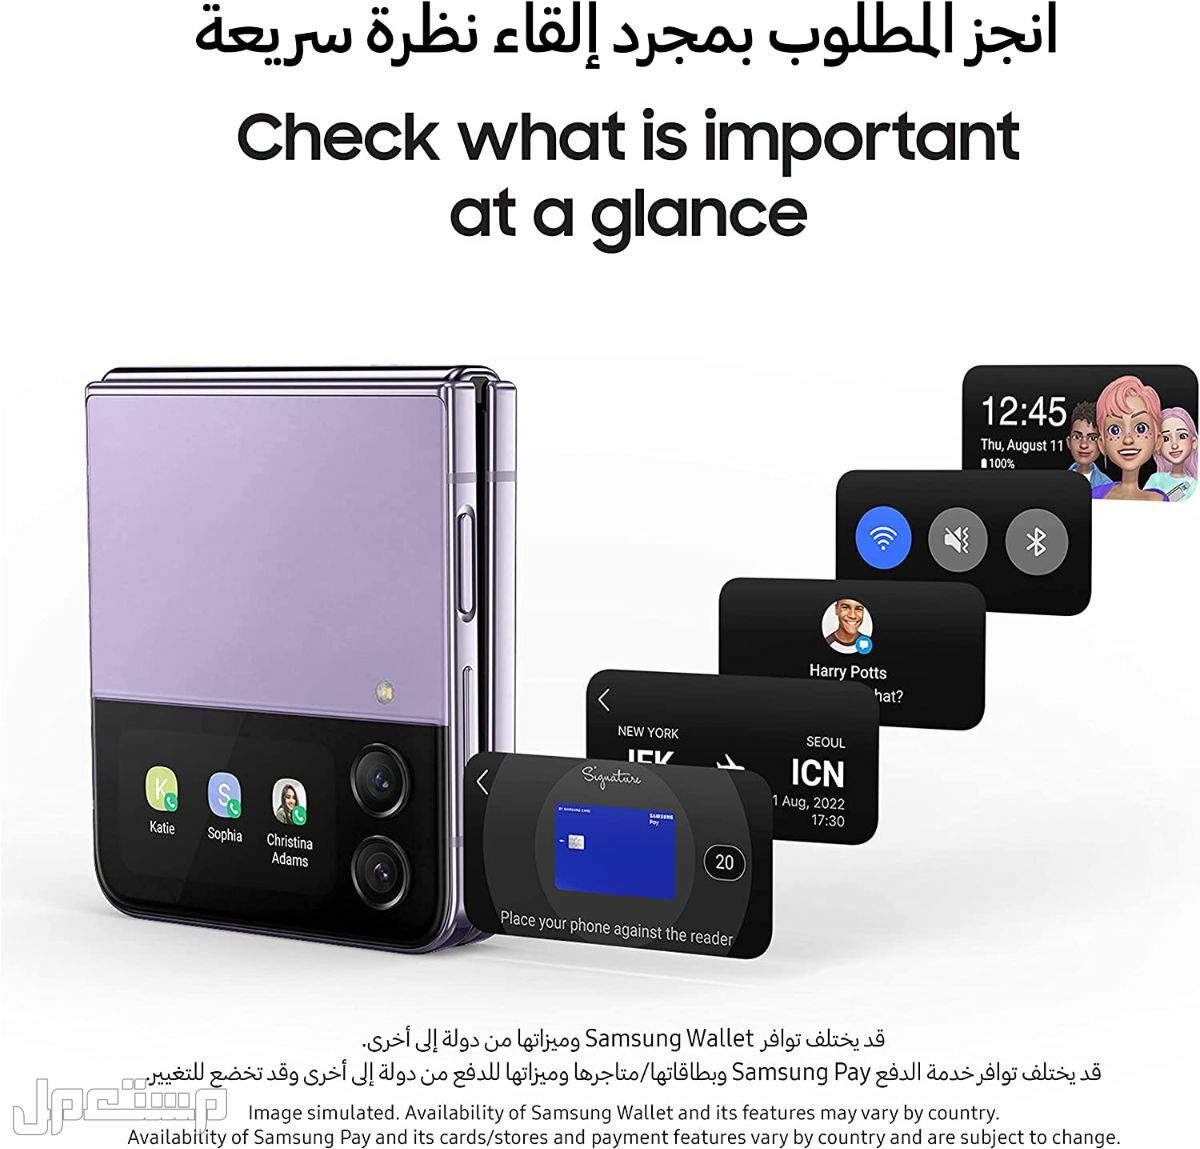 جوال جلاكسي: تعرف على مواصفات وأسعار وأهم مميزات جوال جلاكسي في الأردن هاتف جلاكسي